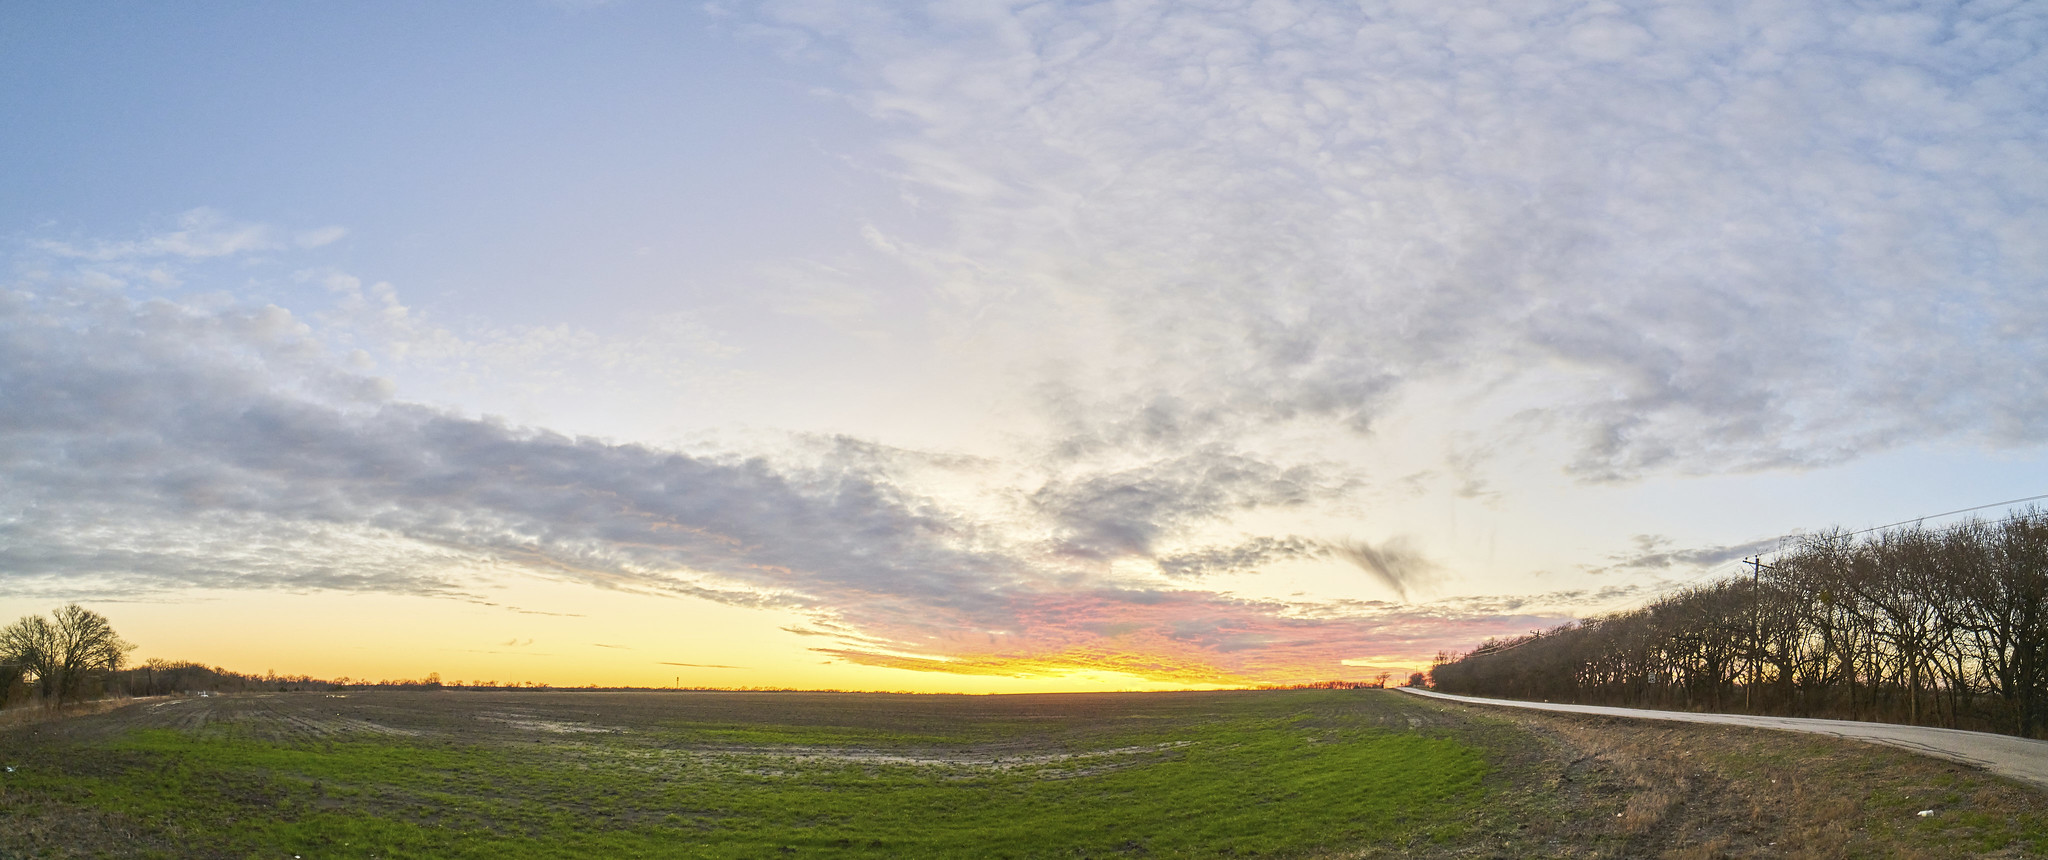 Sunset in a Field, Ultrawide